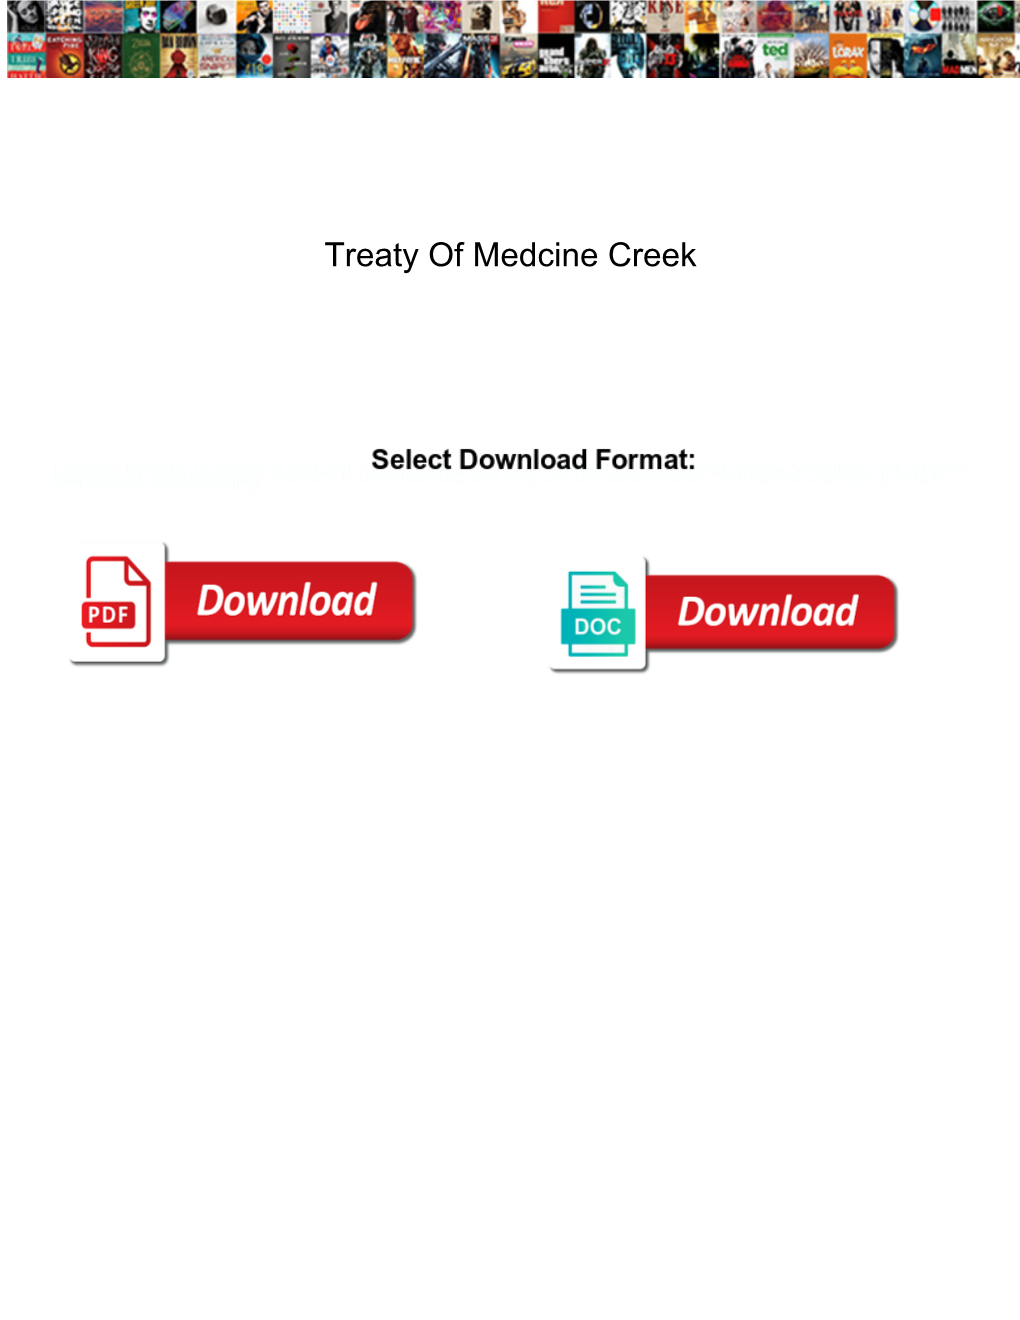 Treaty of Medcine Creek